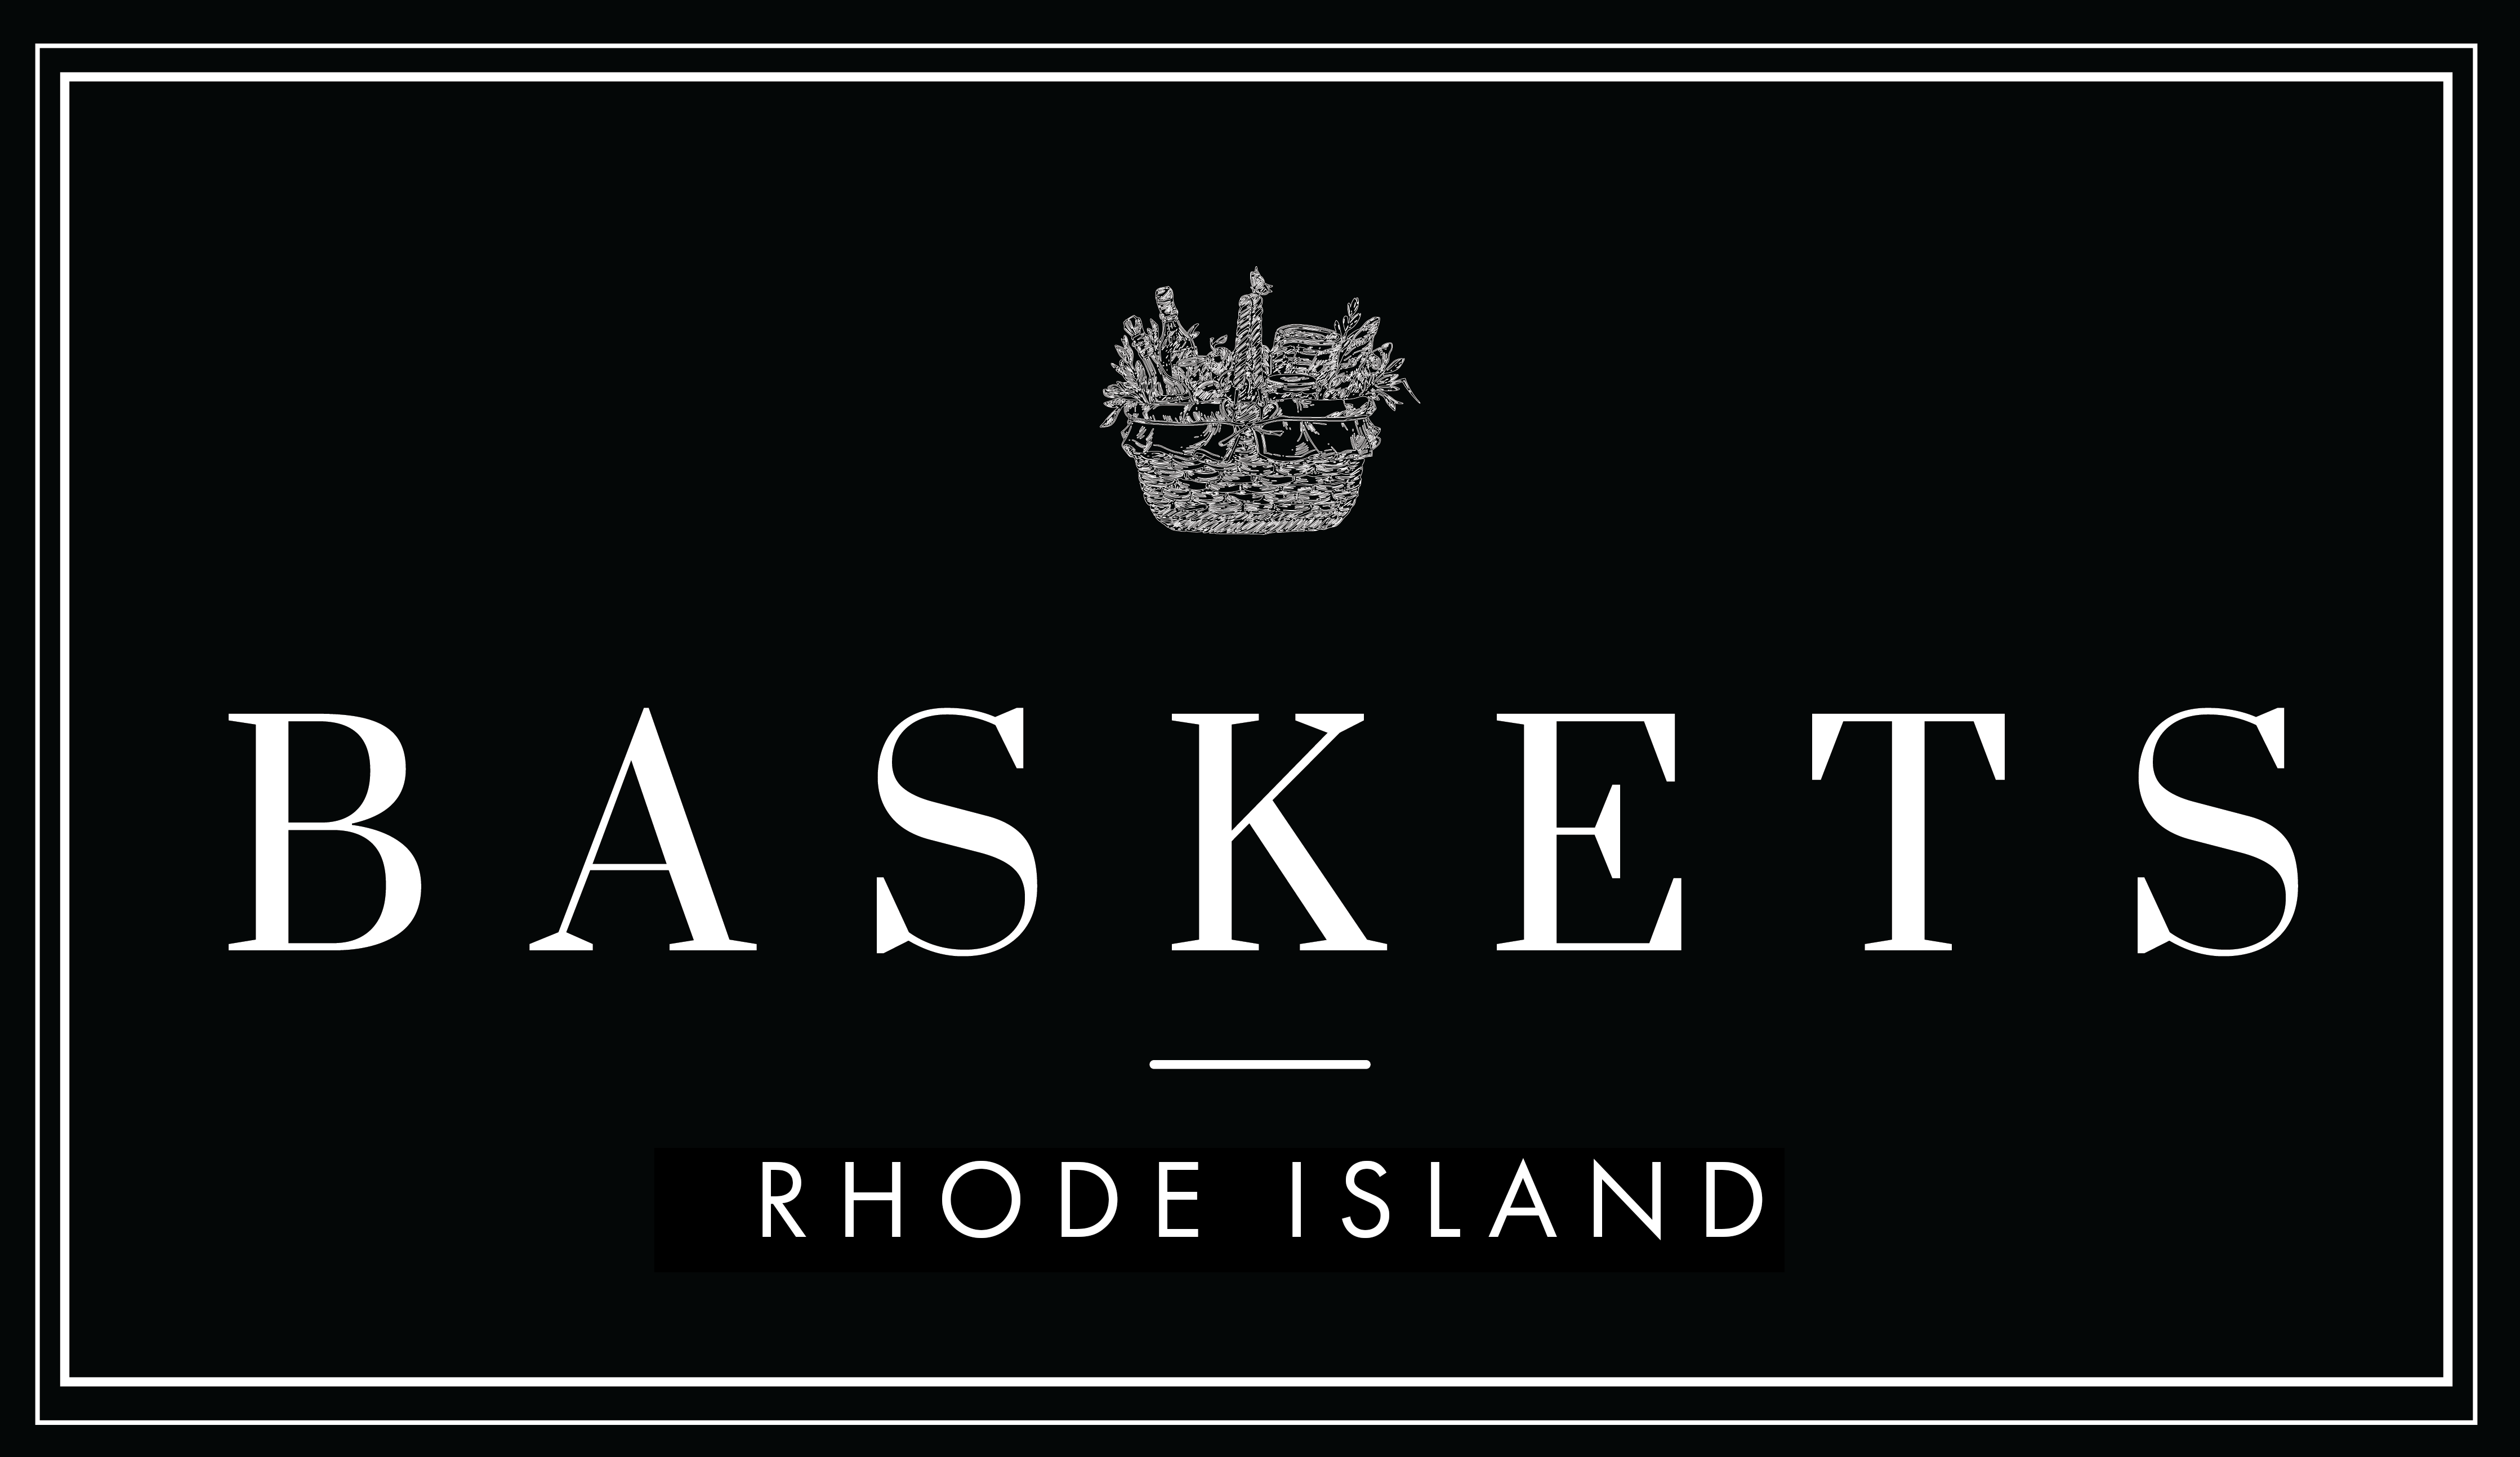 Rhode Island Baskets Baskets | USA